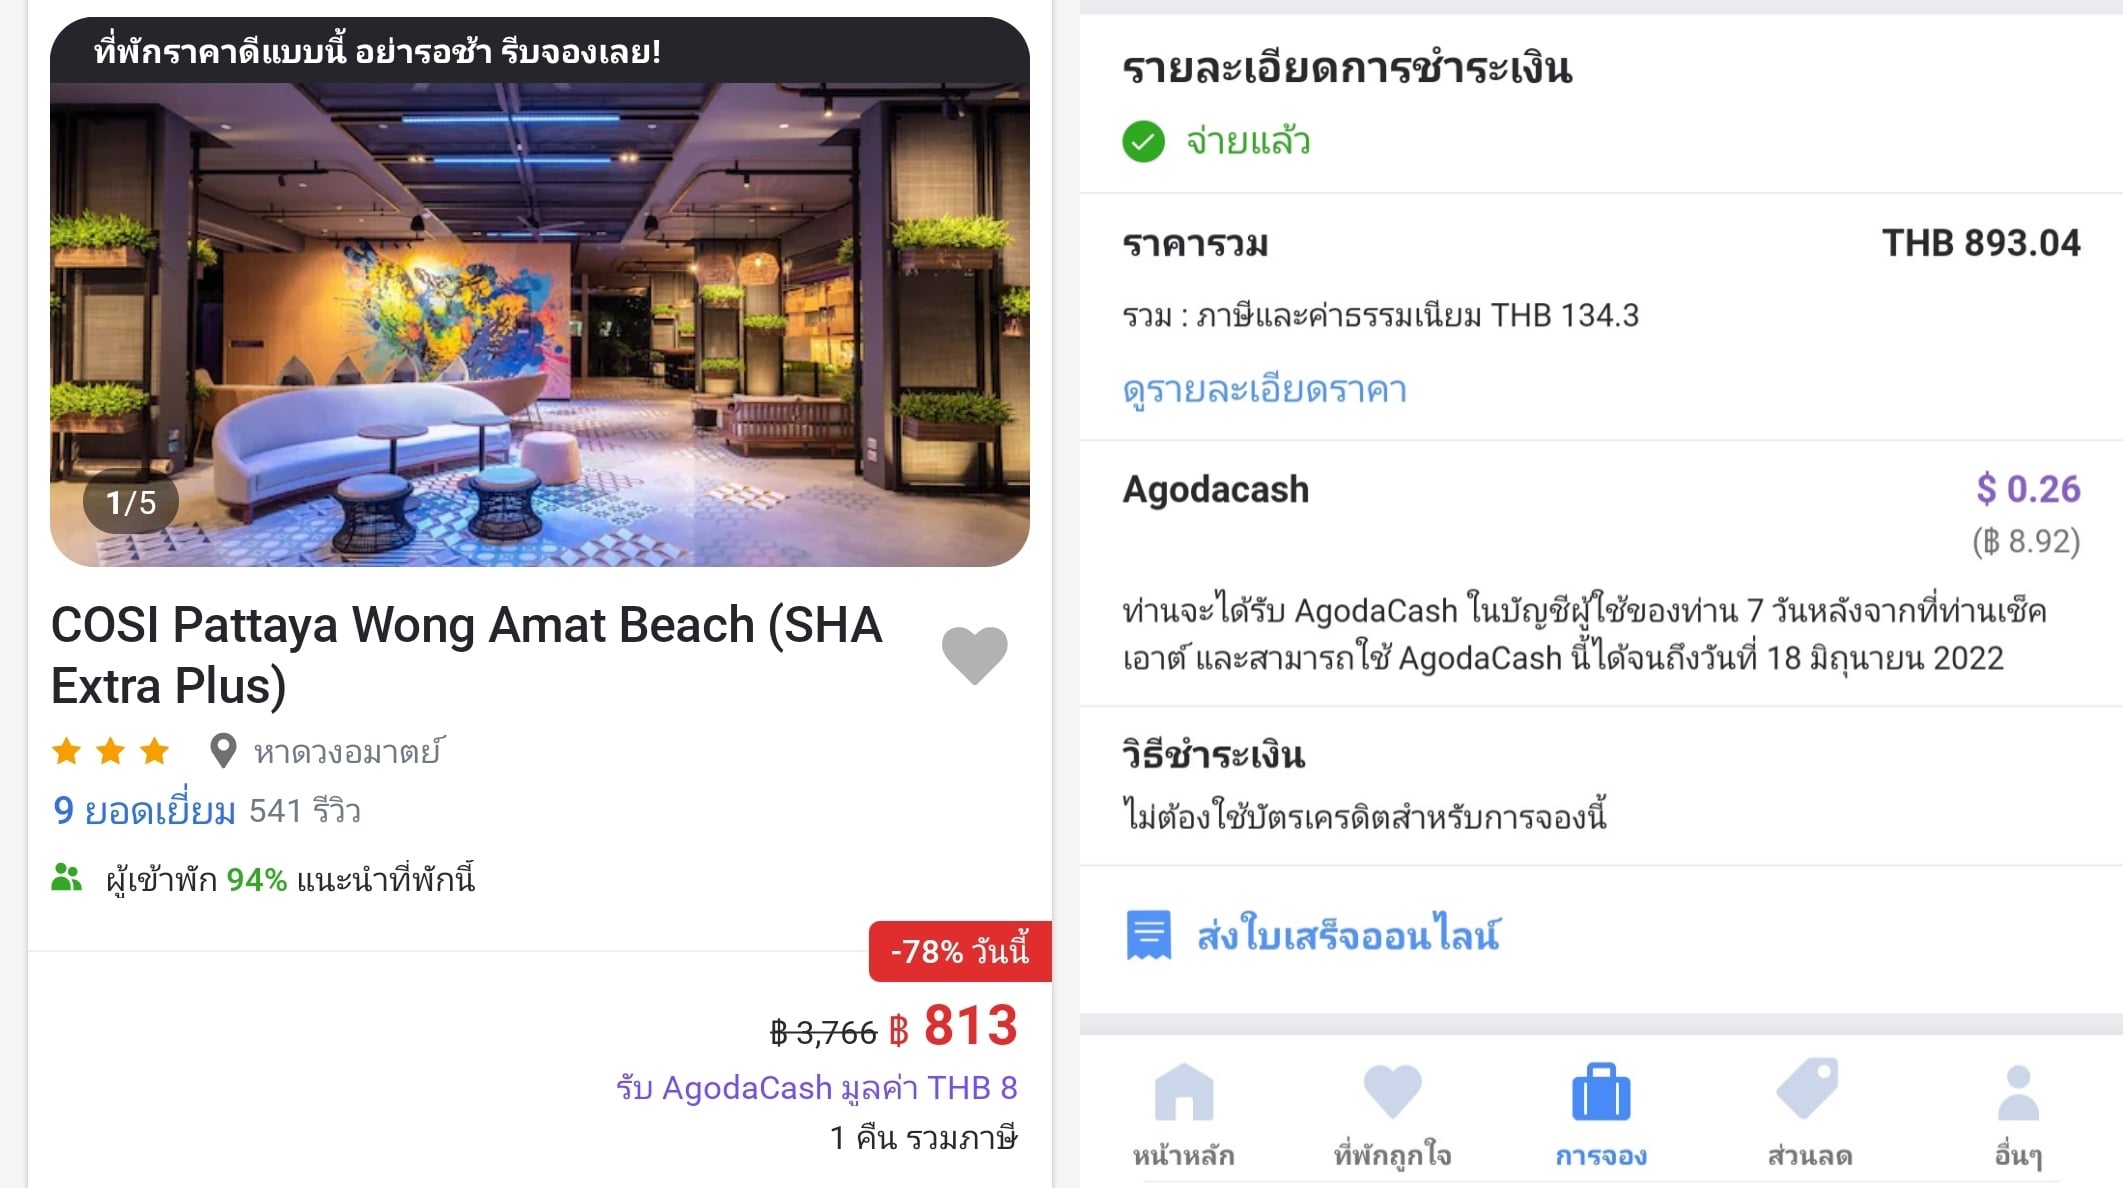 รีวิว!! Cosi Pattaya Wong Amat Beach โรงแรมพัทยา ถูกใจวัยรุ่น จ่ายแค่คืนละ 893 บาท!